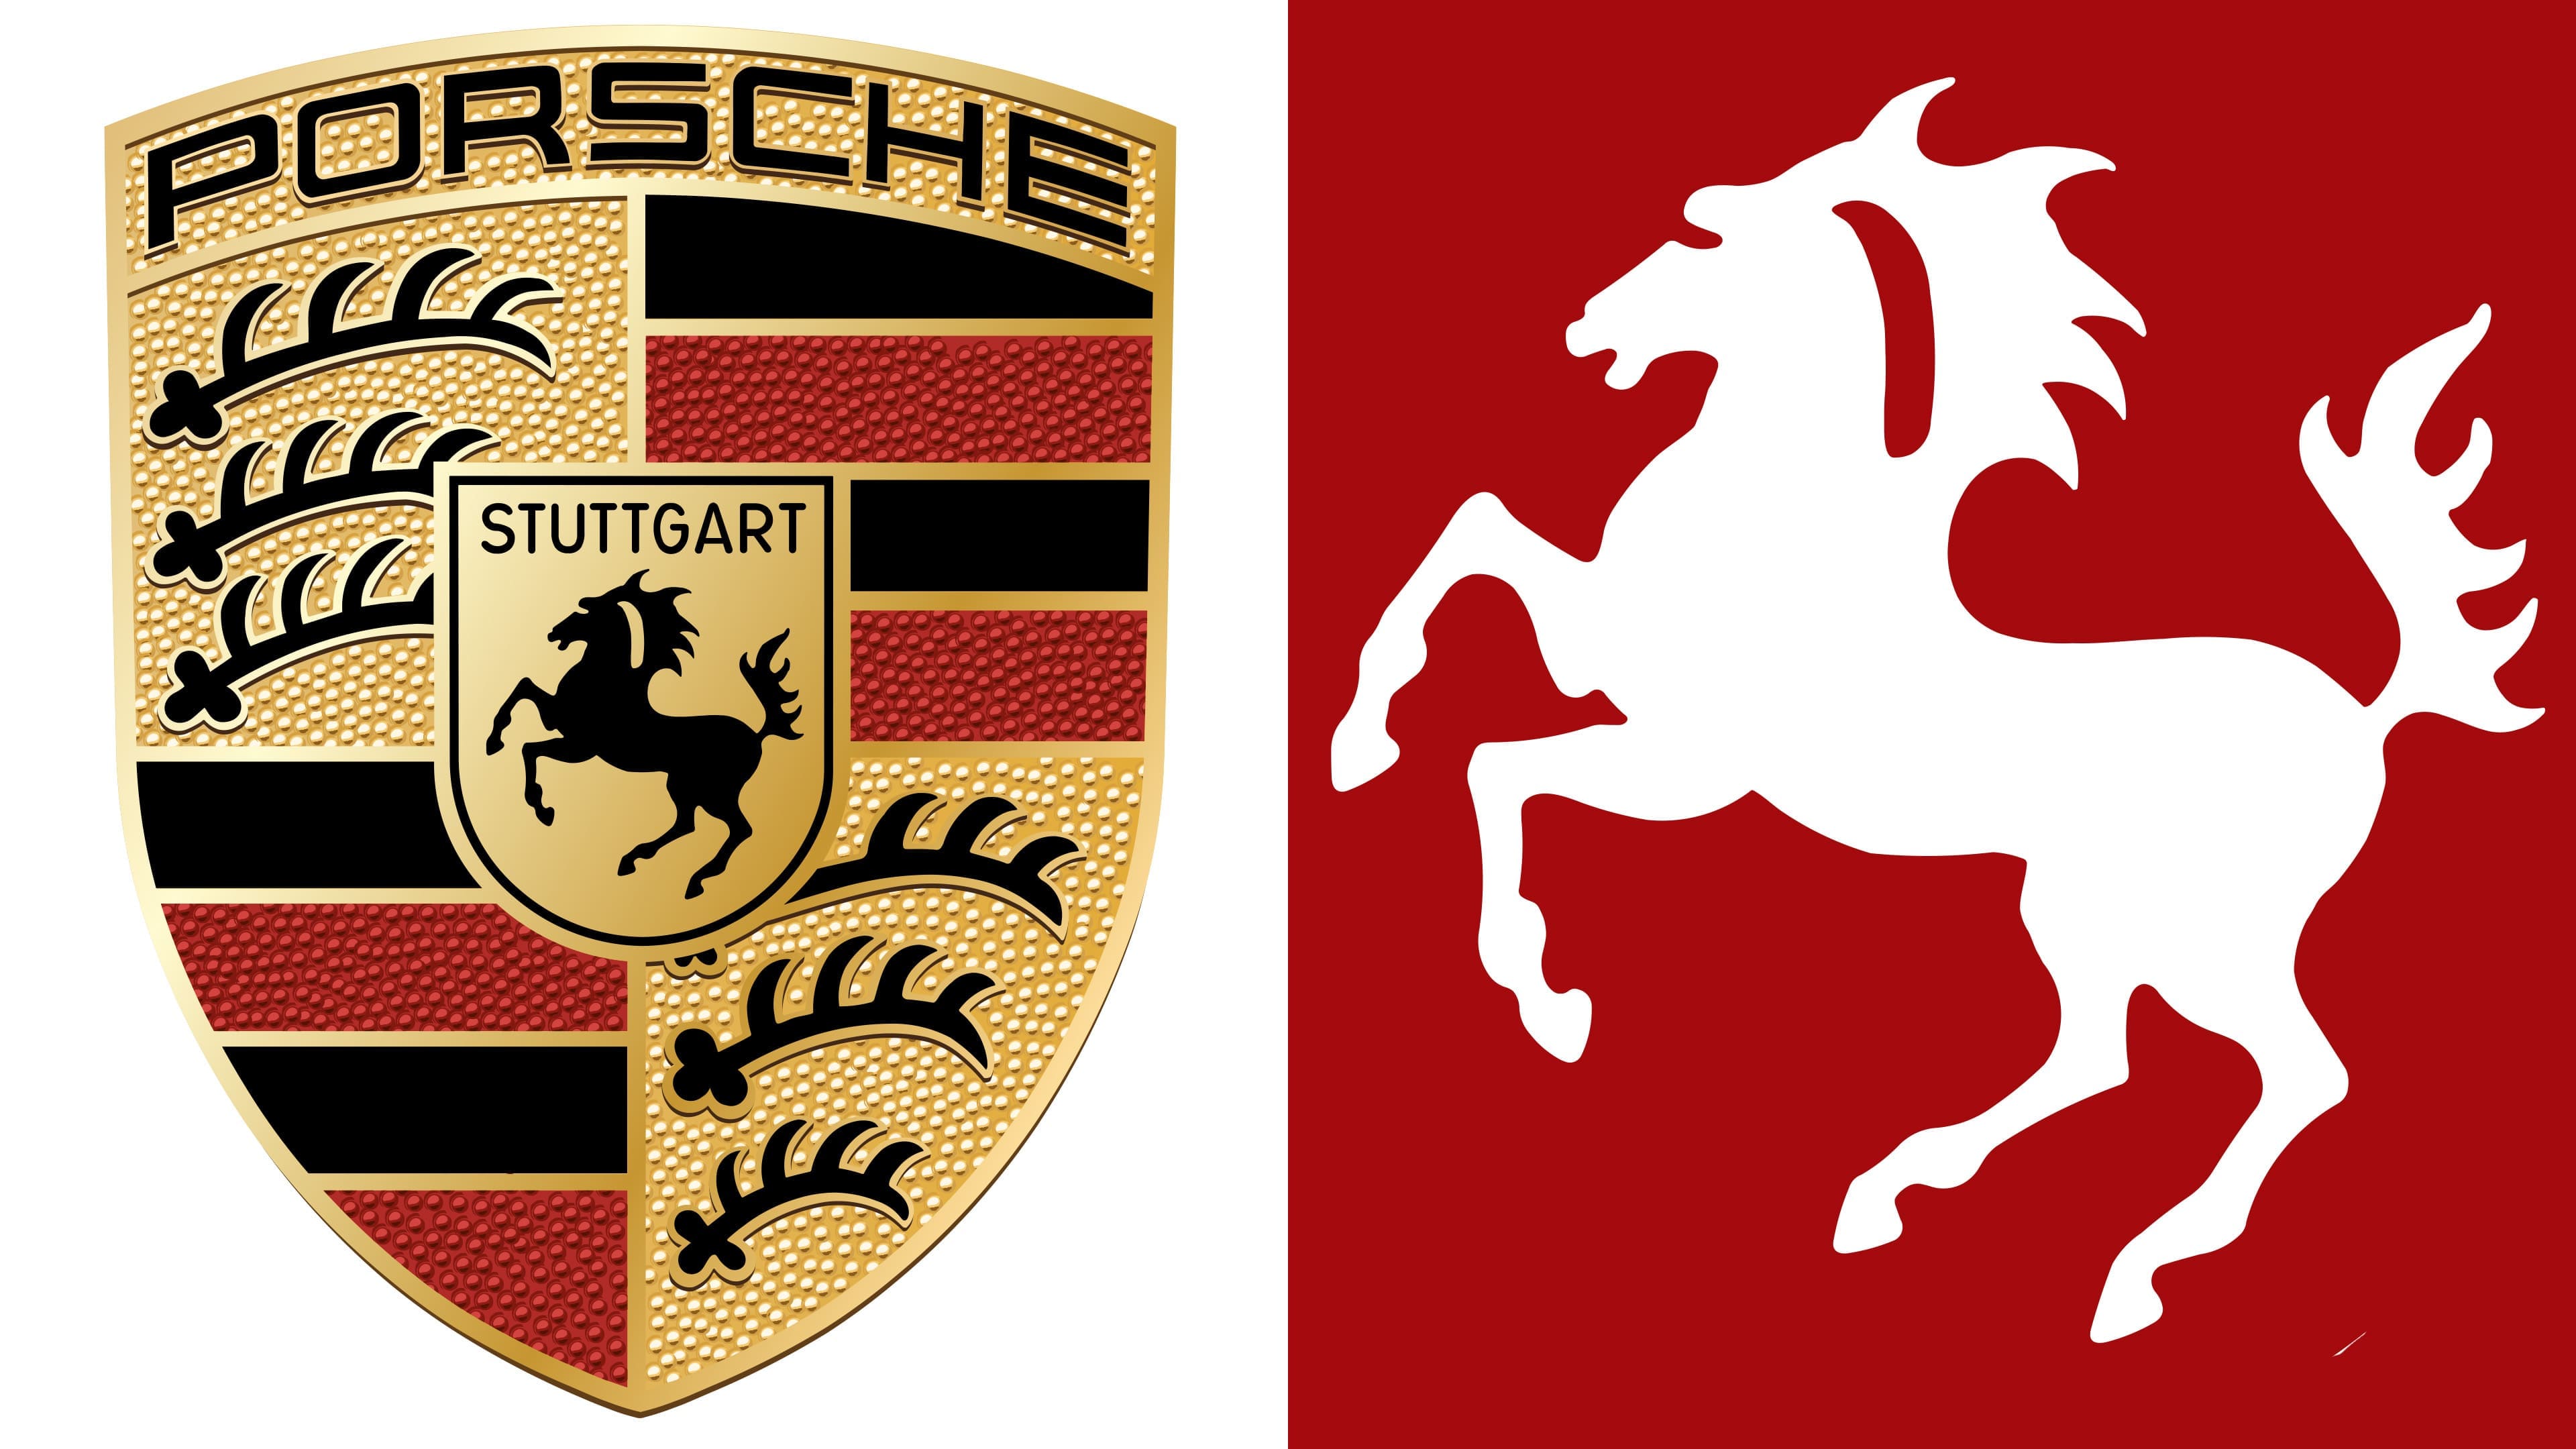 red polo horse logo